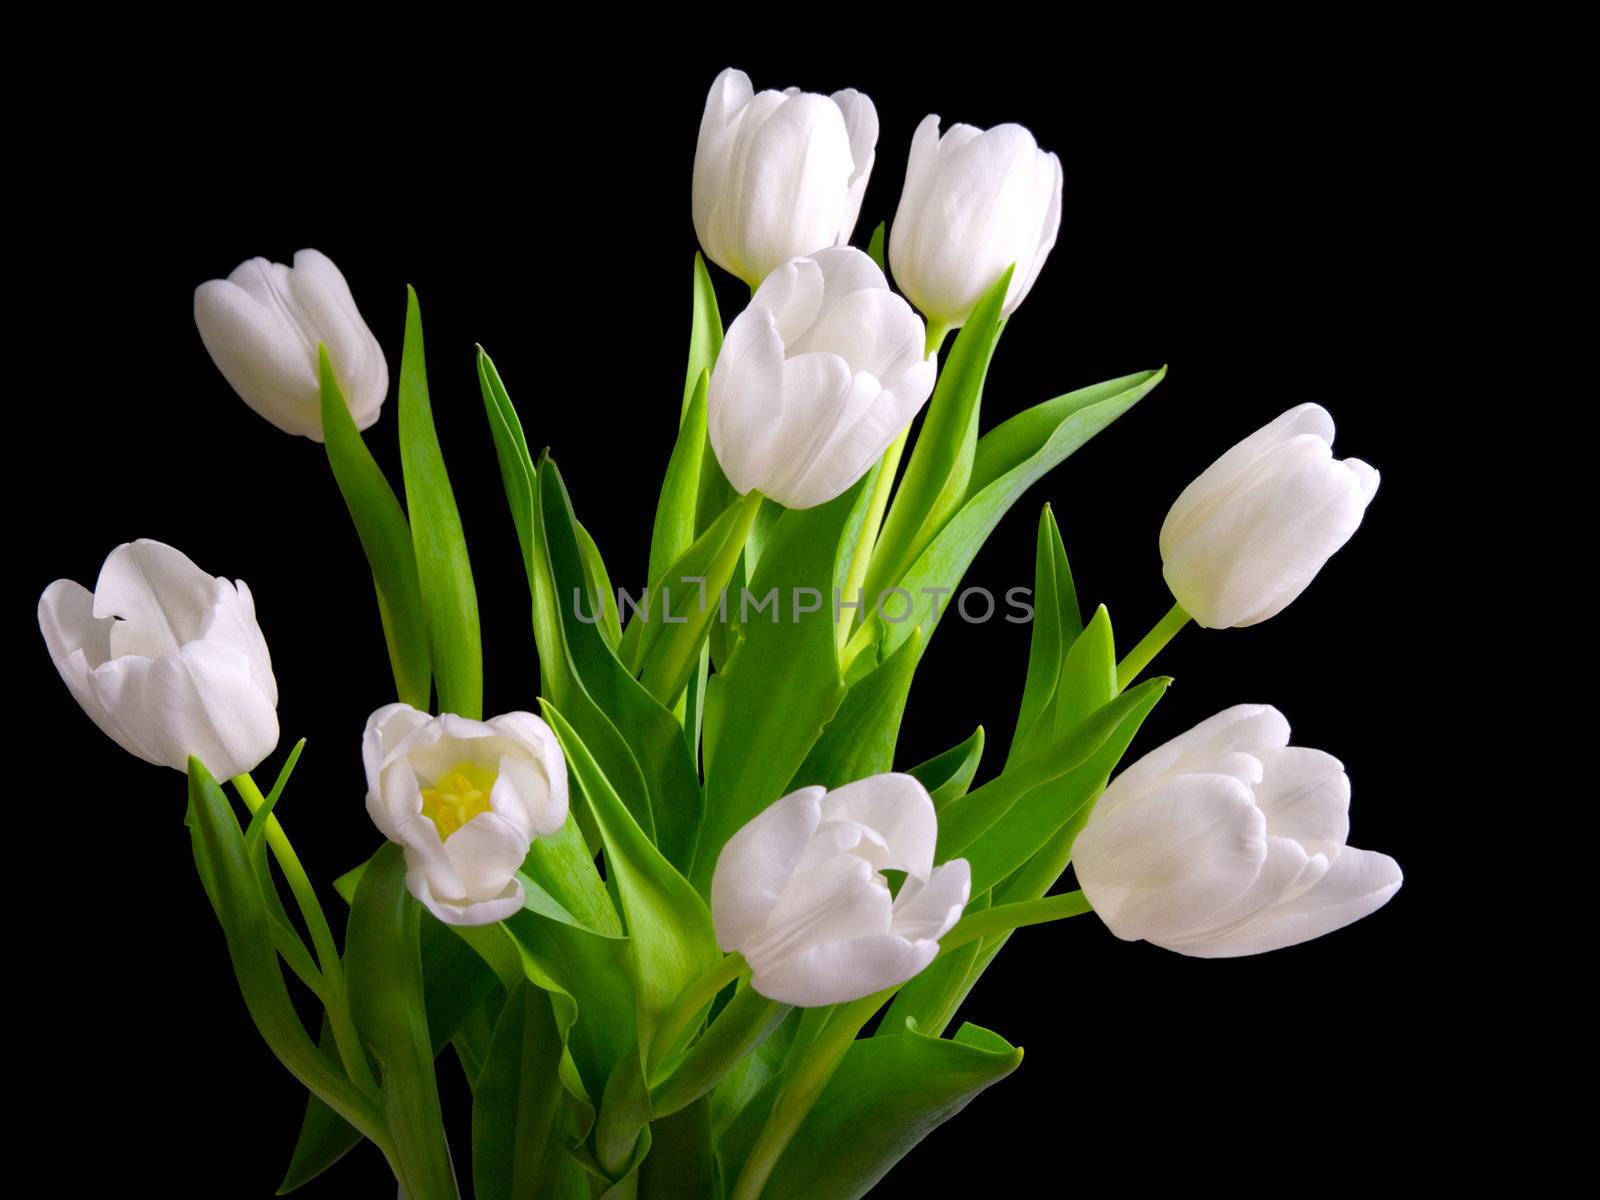 white tulips on black background 